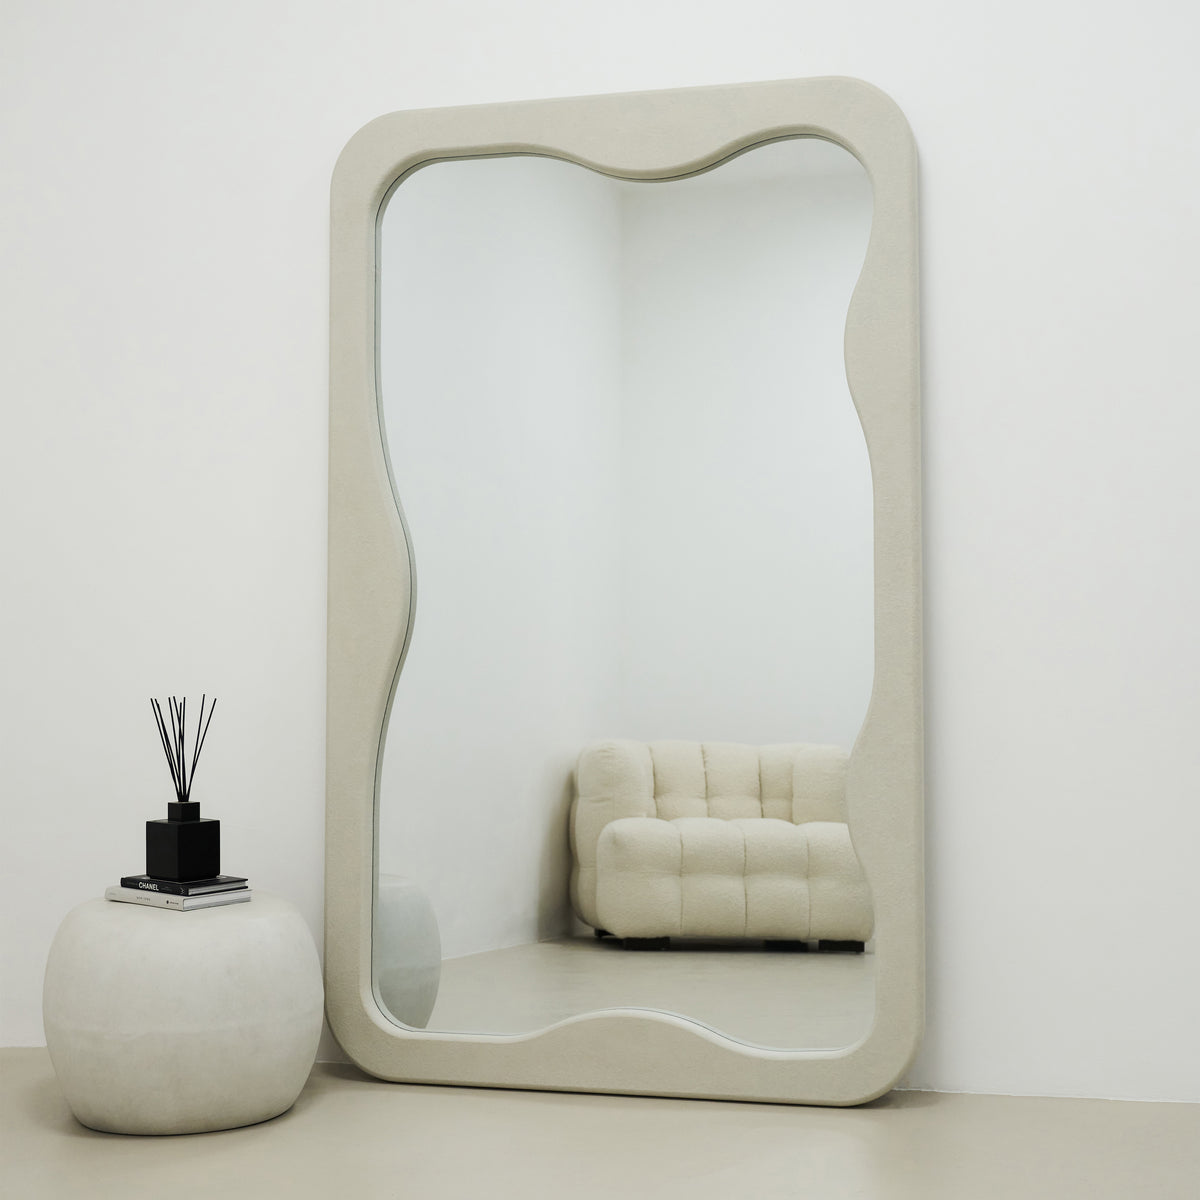 Elara - Miroir long en béton irrégulier 180cm x 110cm